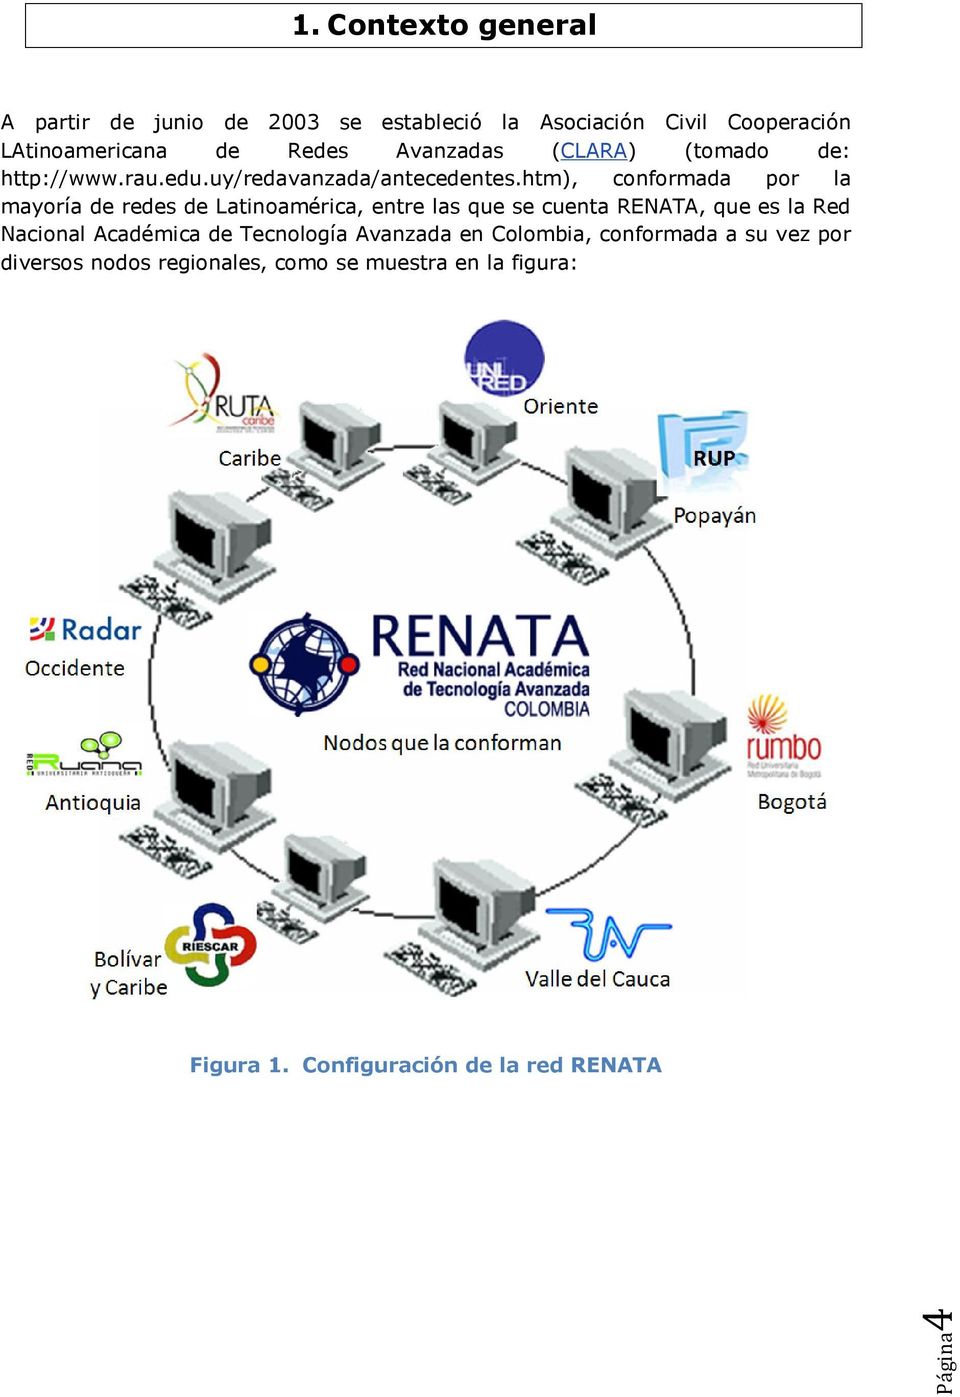 htm), conformada por la mayoría de redes de Latinoamérica, entre las que se cuenta RENATA, que es la Red Nacional